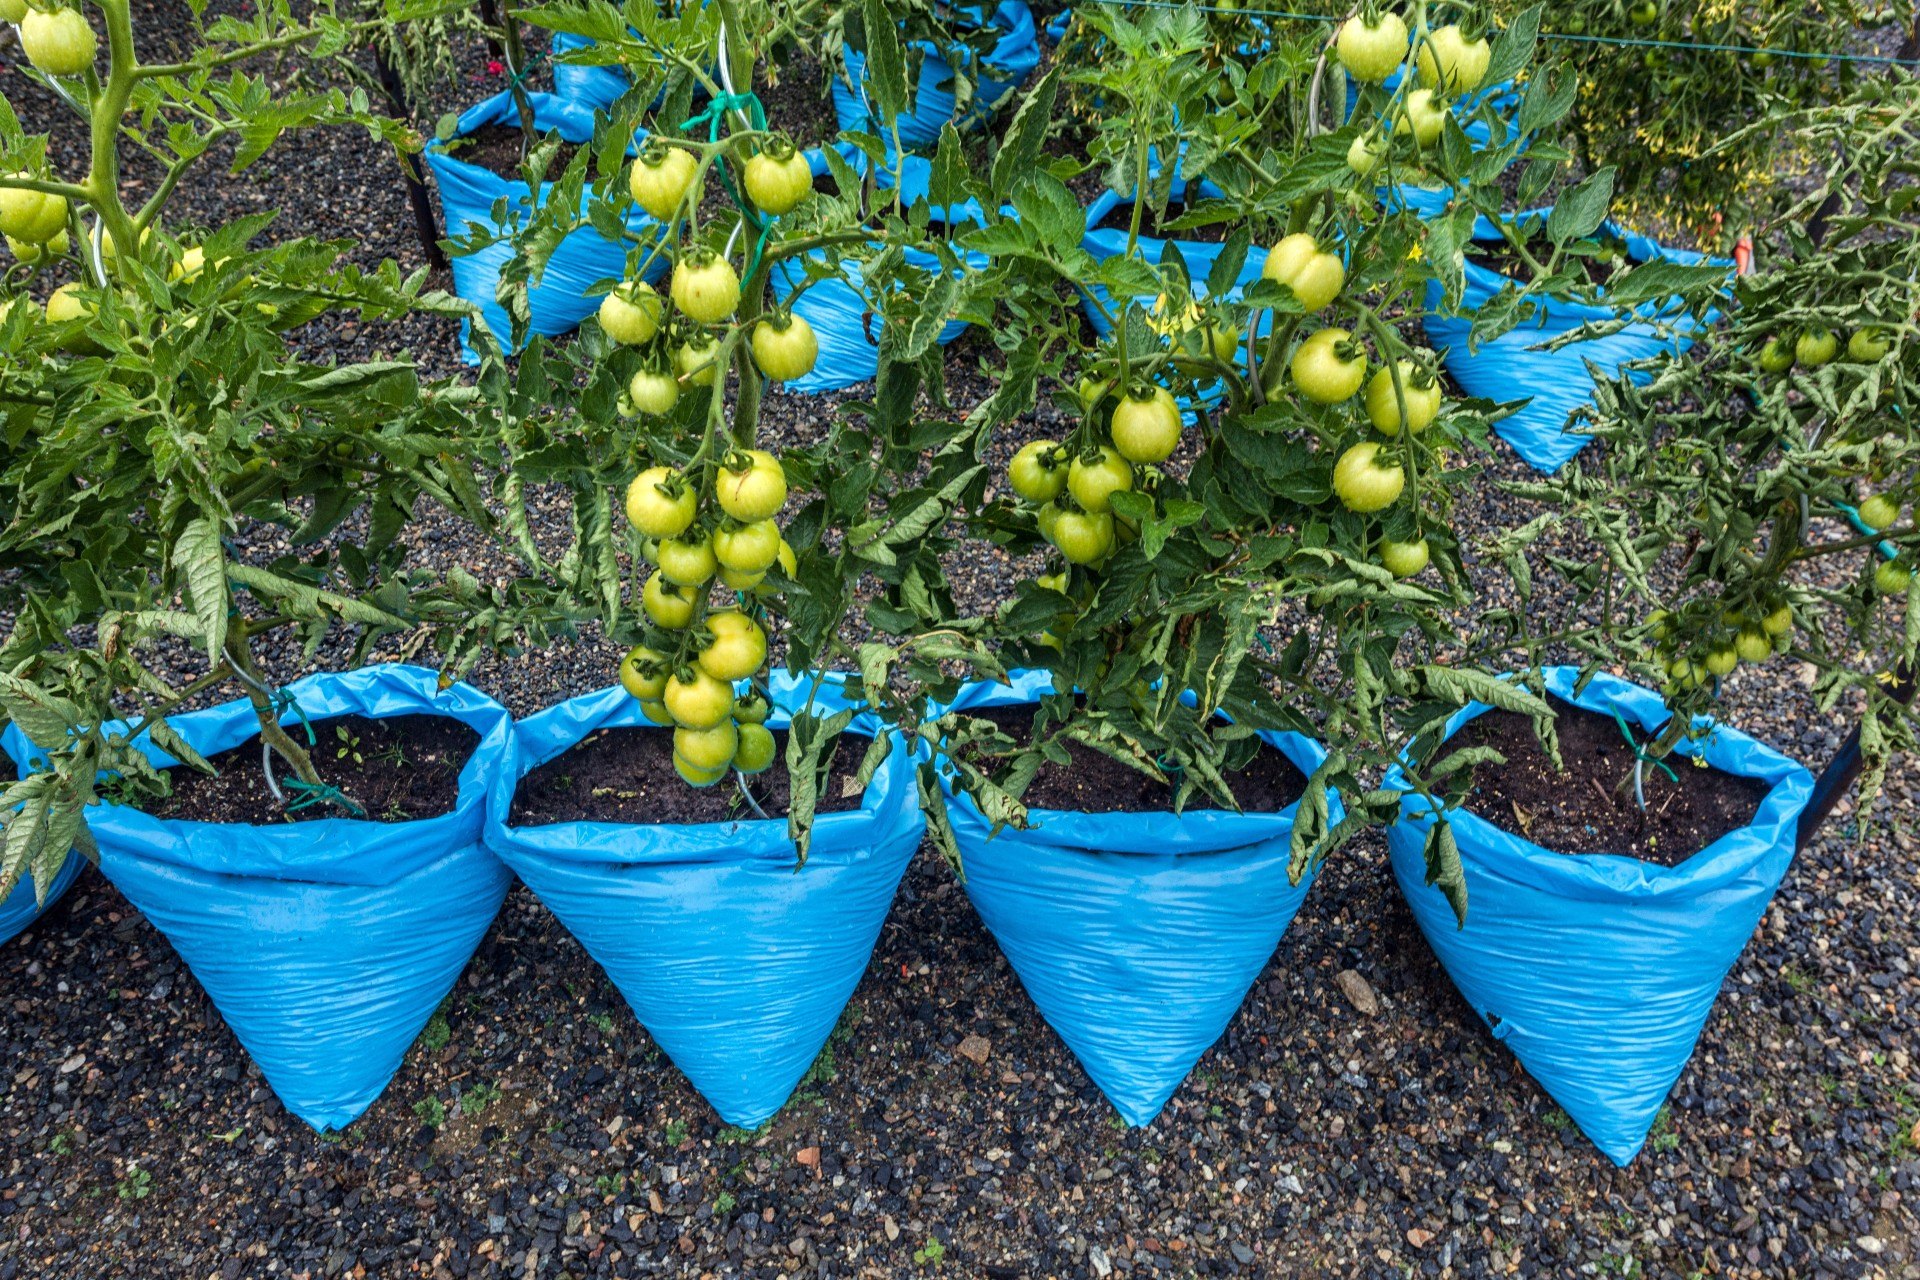 Выращивание помидоров в мешках (пакетах): суть метода, фото, какие сортатоматов выбрать